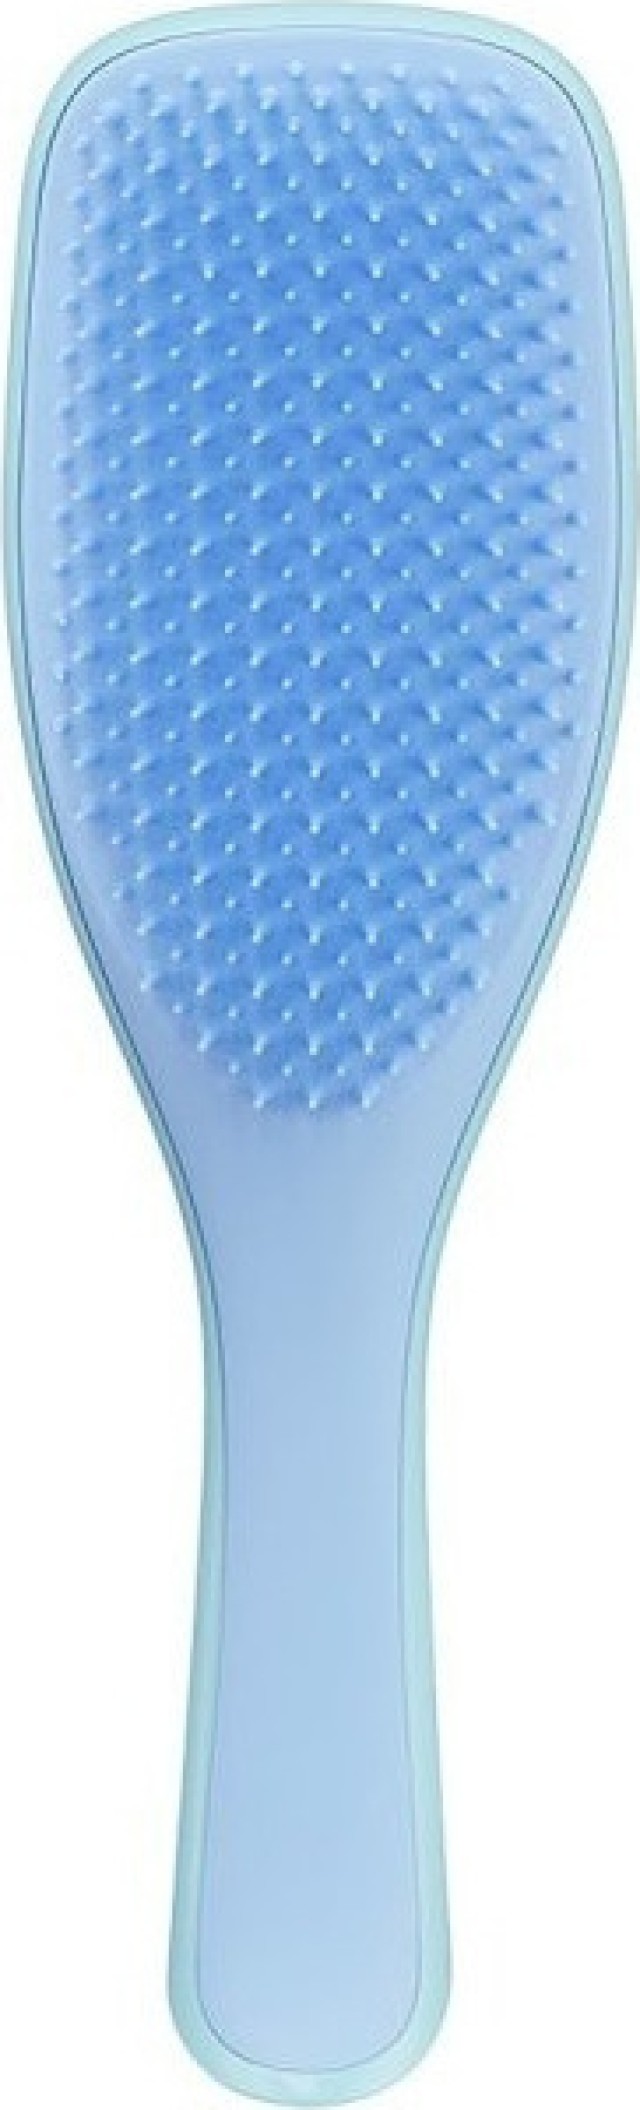 Tangle Teezer The Wet Detangler Denim Blue Hairbrush Βούρτσα Μαλλιών για Εύκολο Χτένισμα 1τμχ